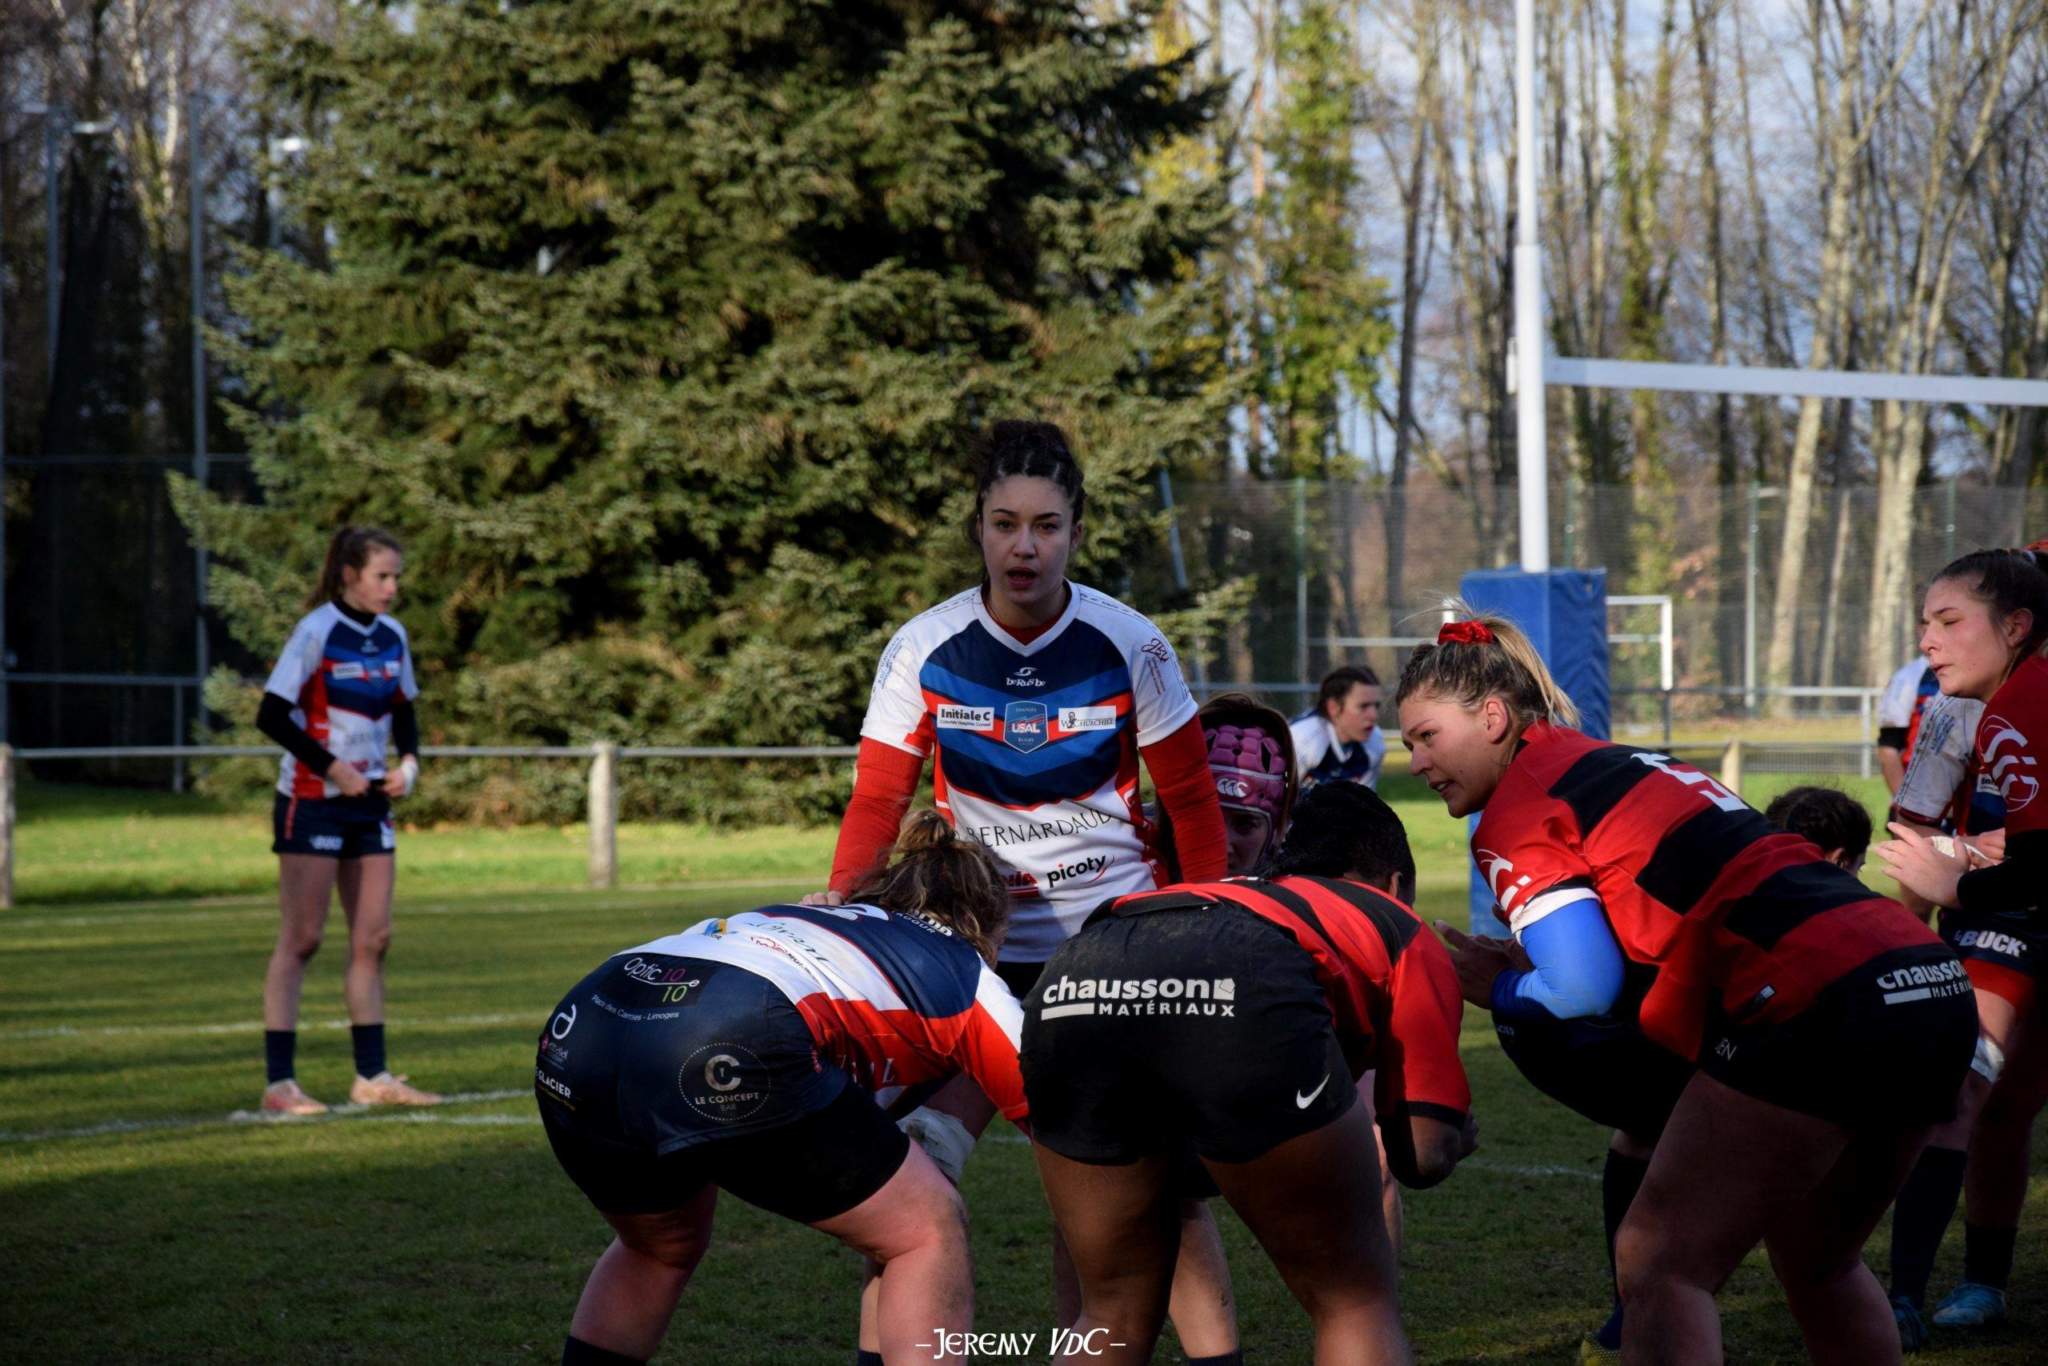 Limoges espère pérenniser sa place en Elite 2 féminine, tou en continuant le développement du rugby féminin local (archive photo Jeremy VdC)